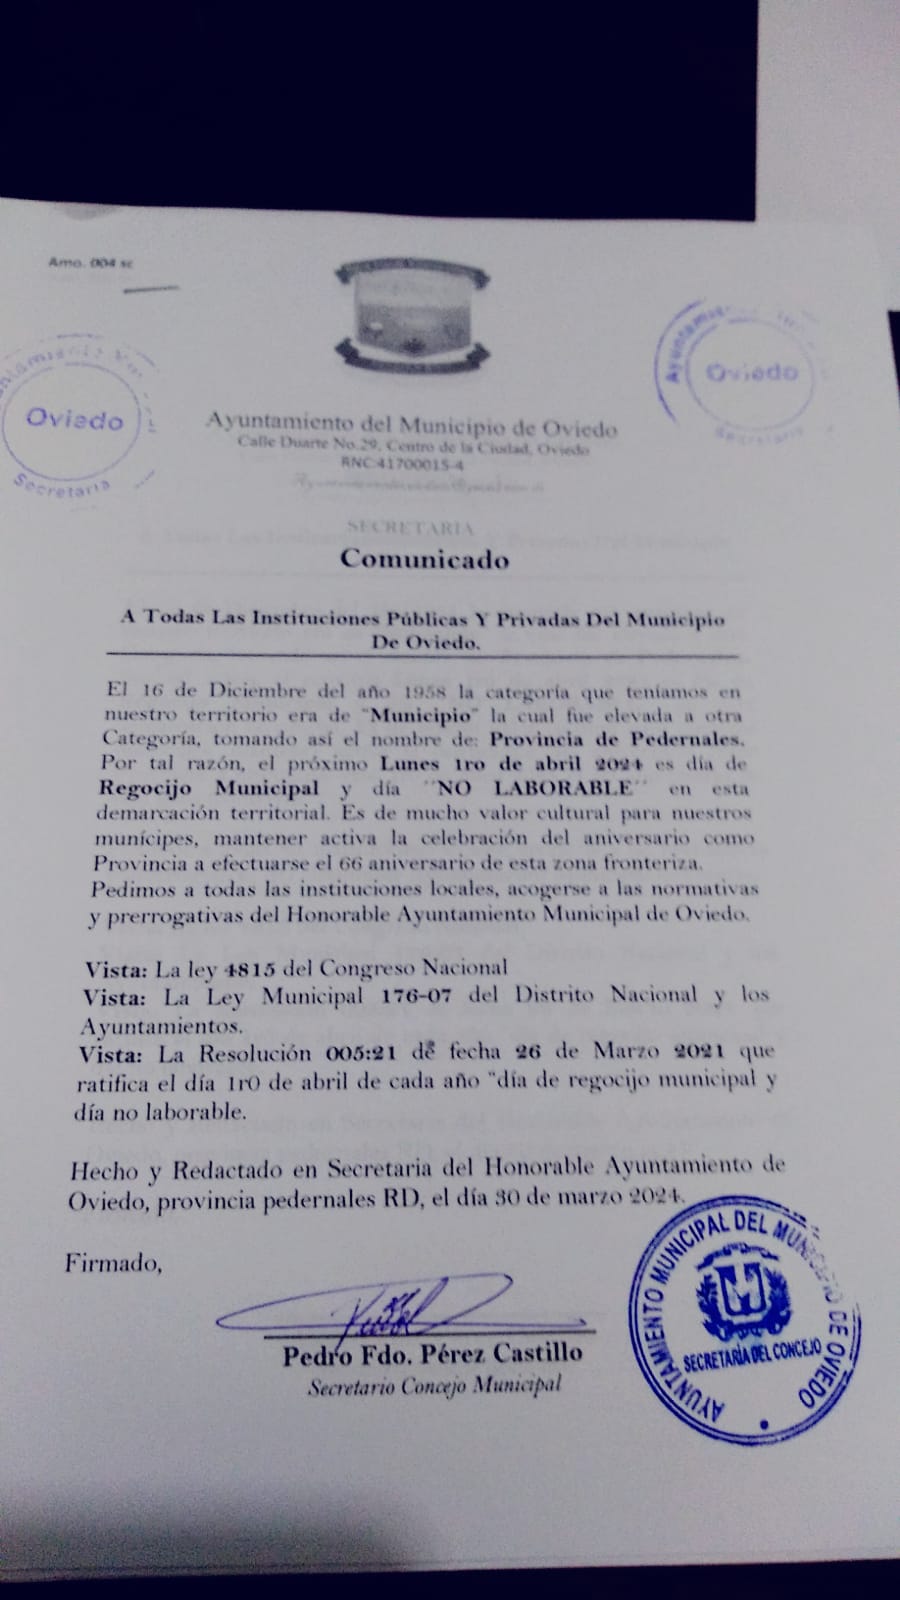 Ayuntamiento Municipal de Oviedo Declara el 1ro de abril NO LABORABLE